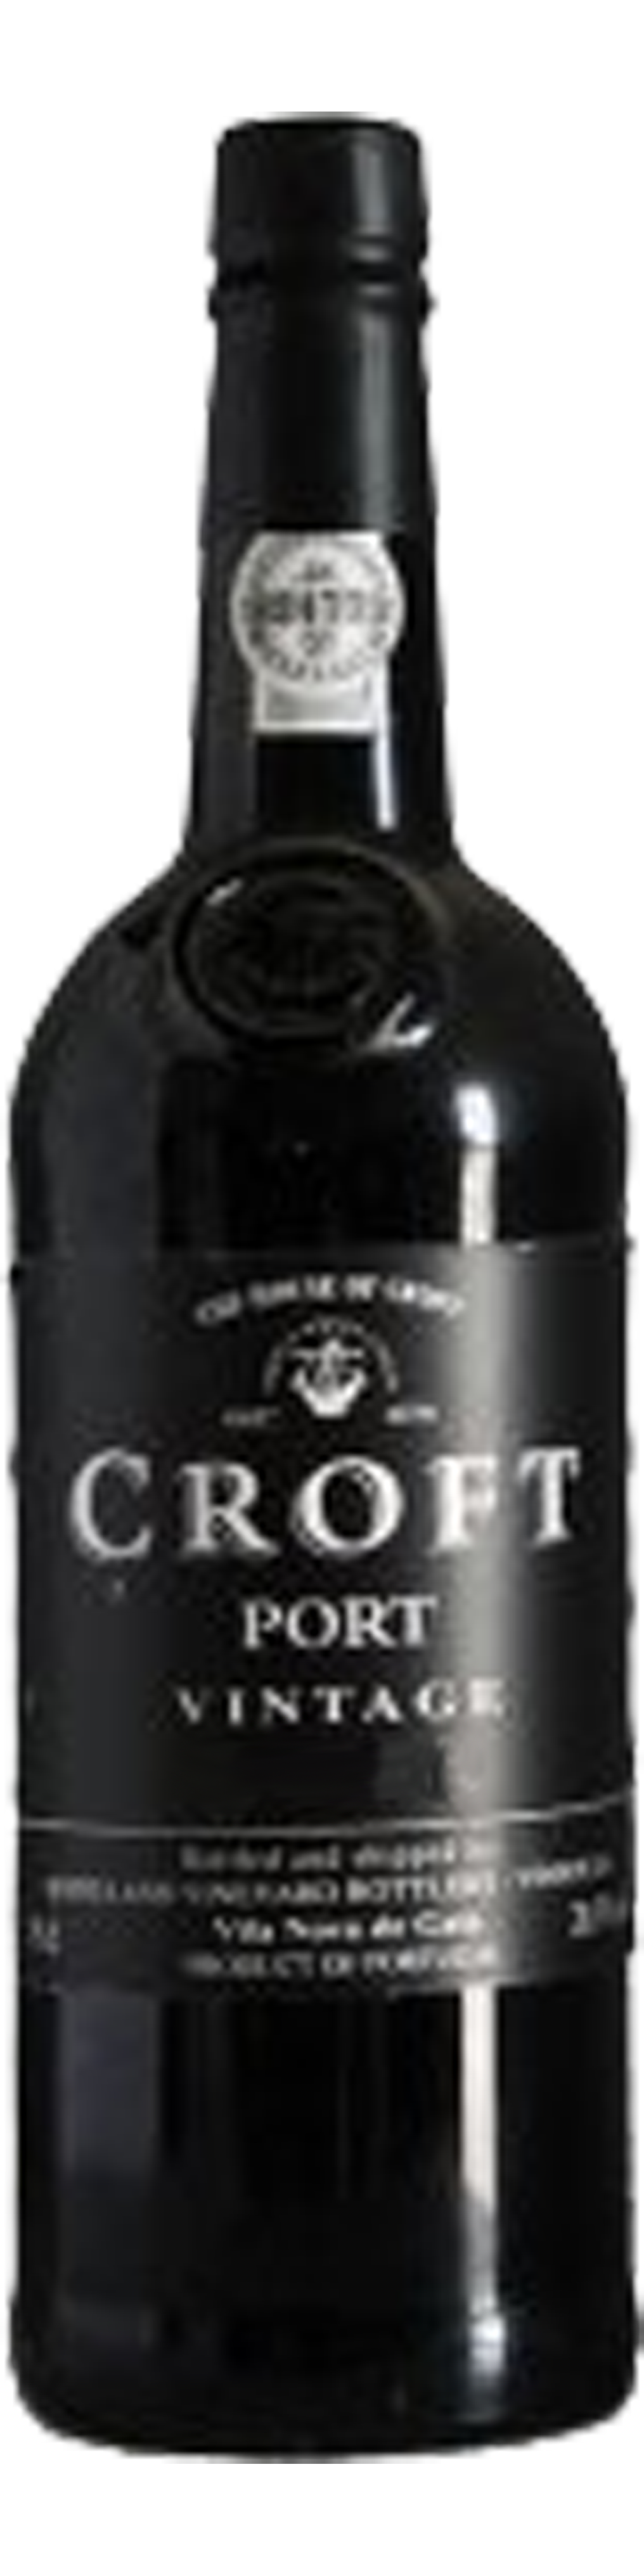 Bottle shot of 2000 Croft